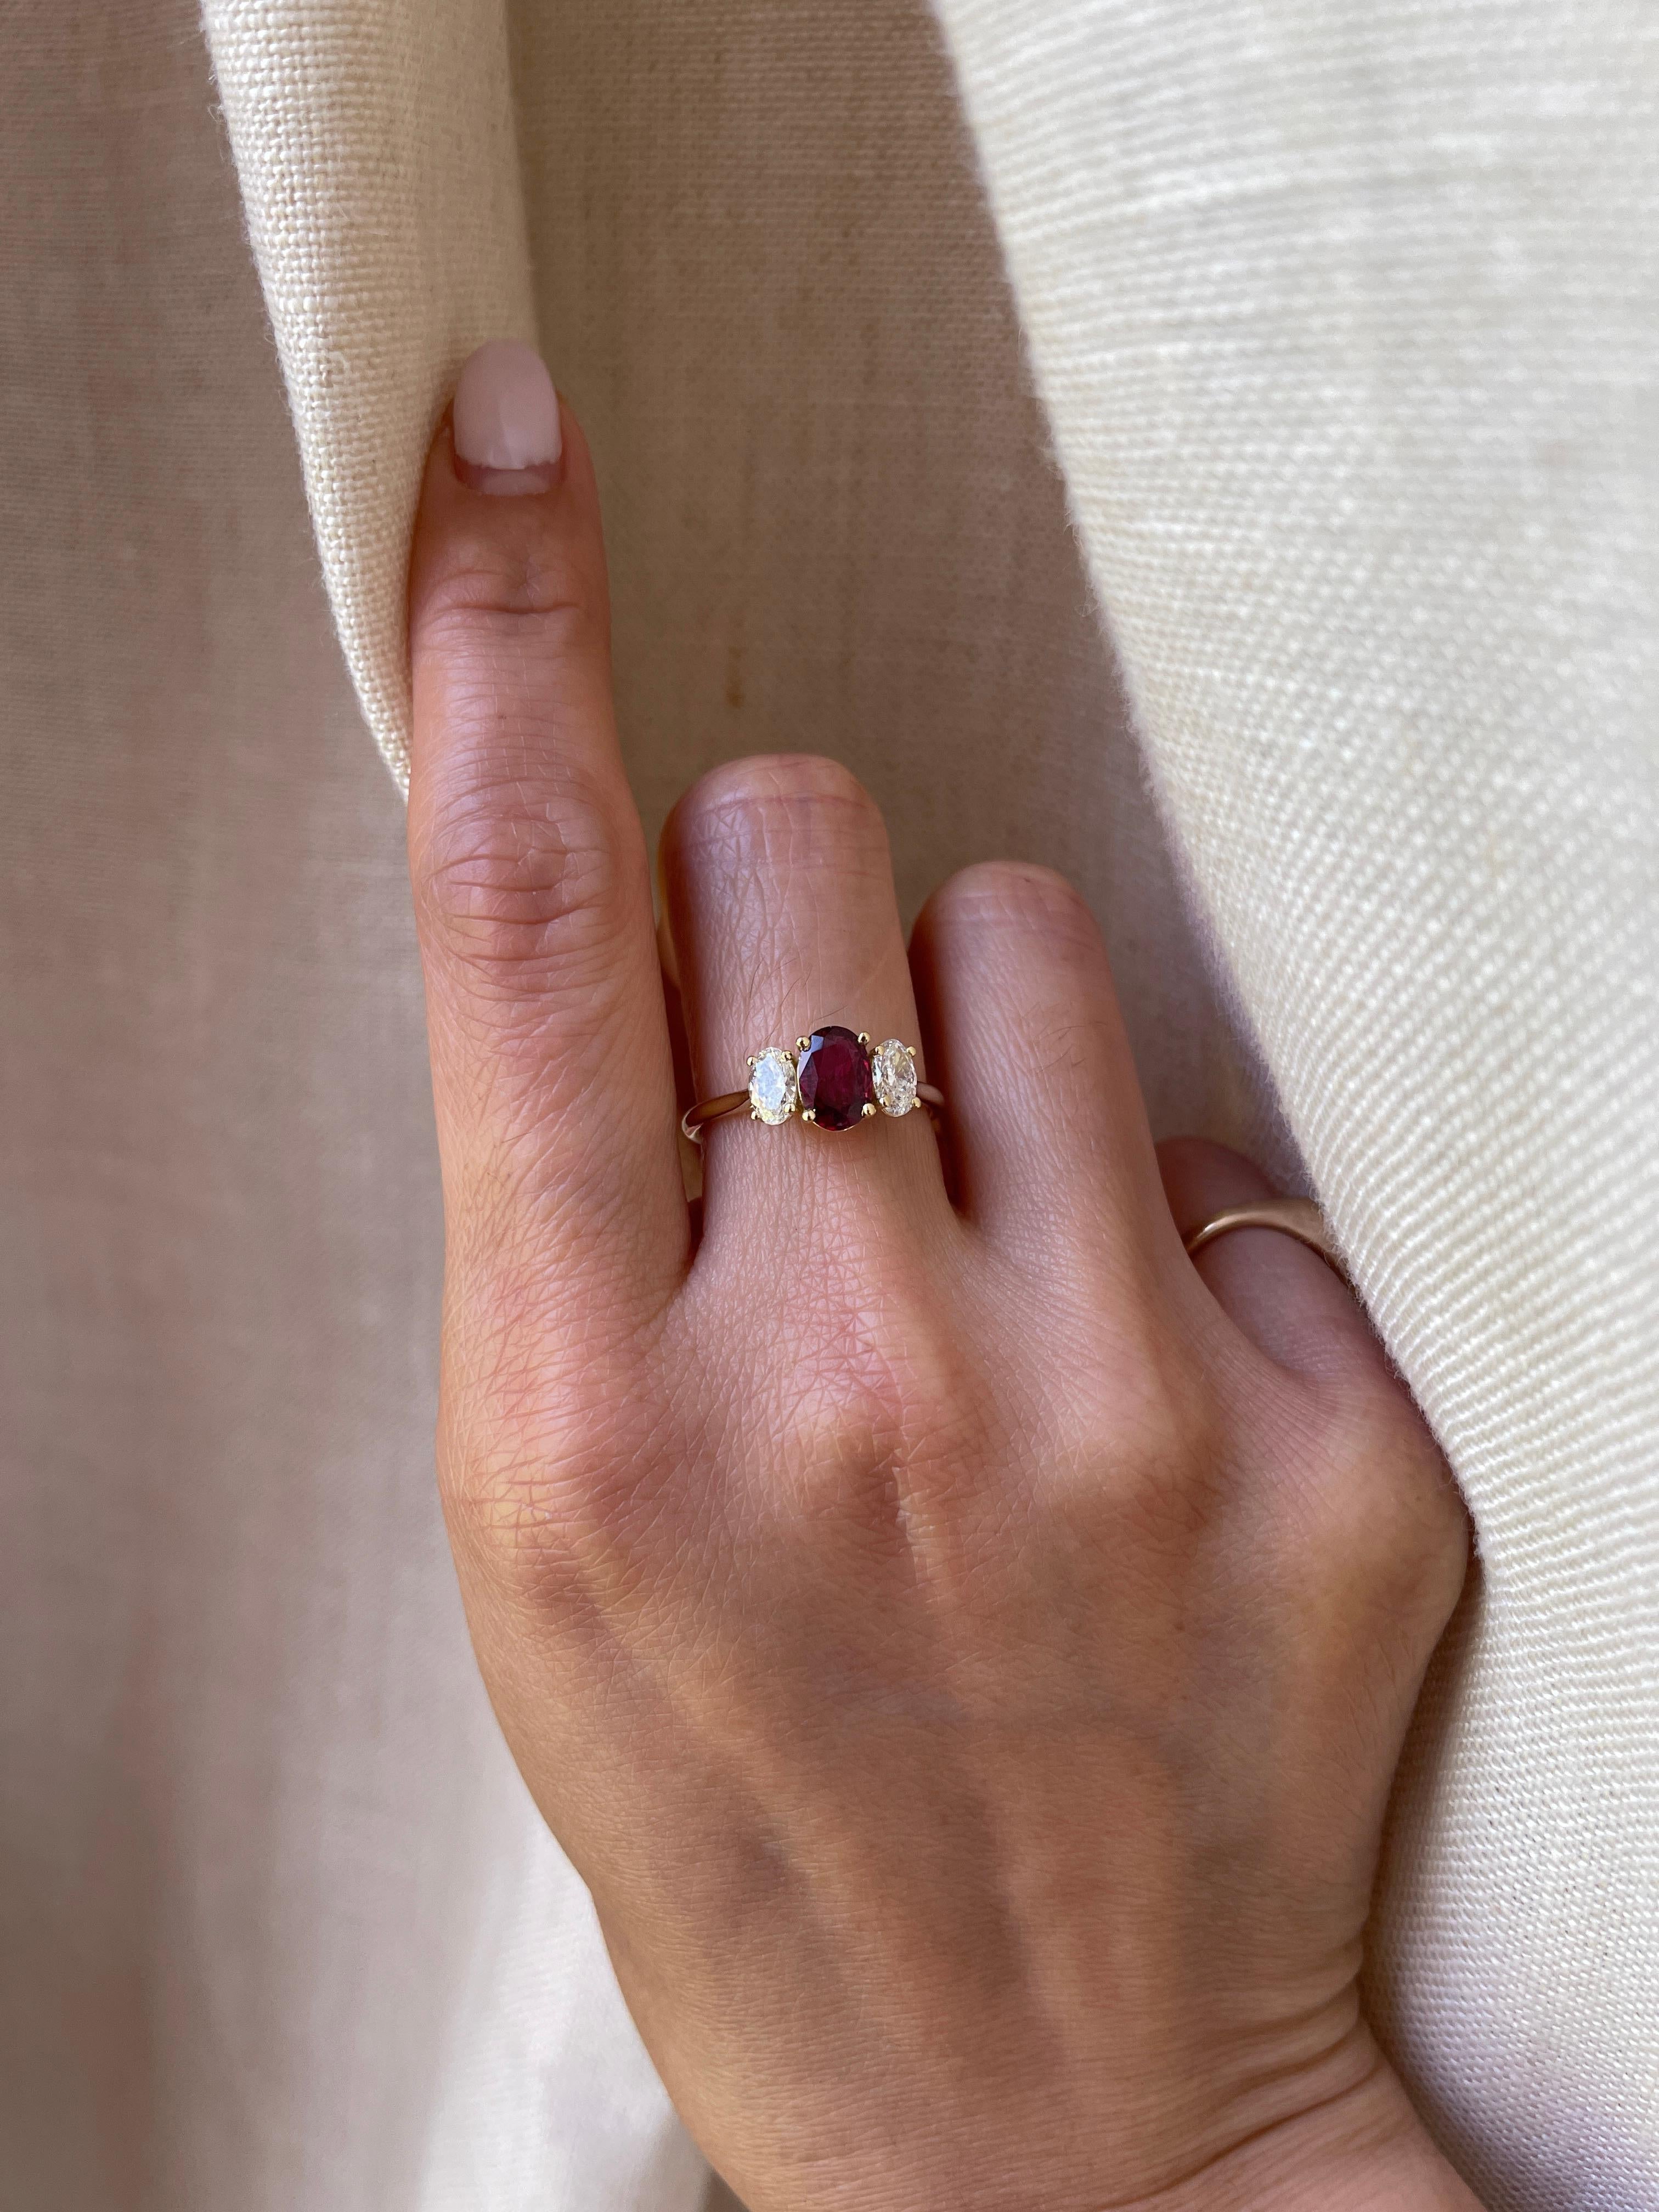 18karat Certified 0.88 Carat Ruby Diamond Ring, Three Stone Engagement Ring 2